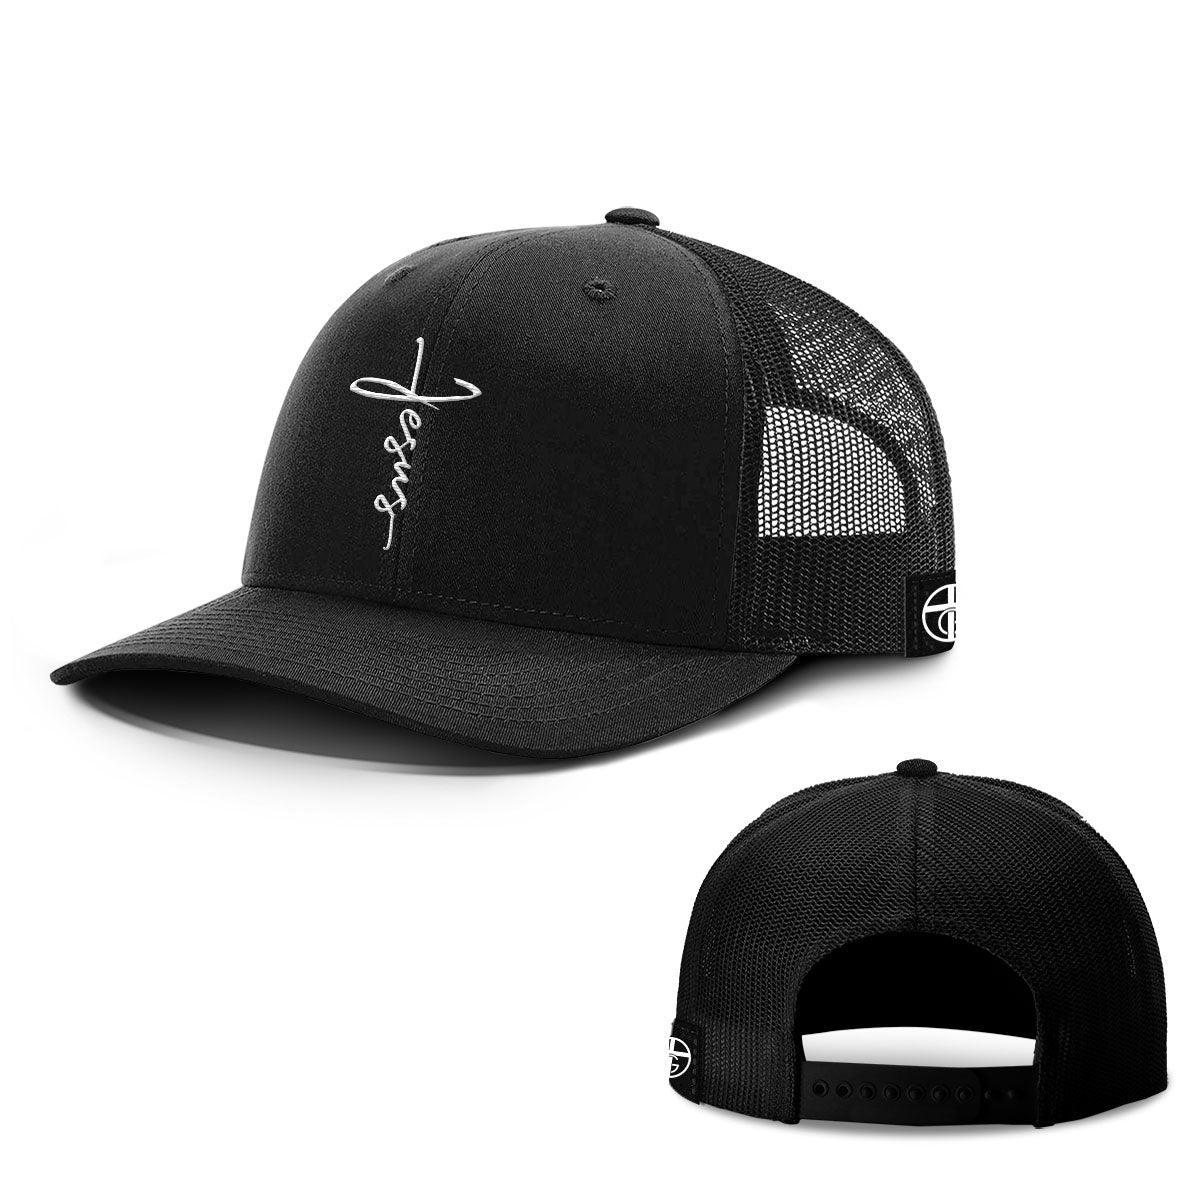 Jesus Cross Center Hats